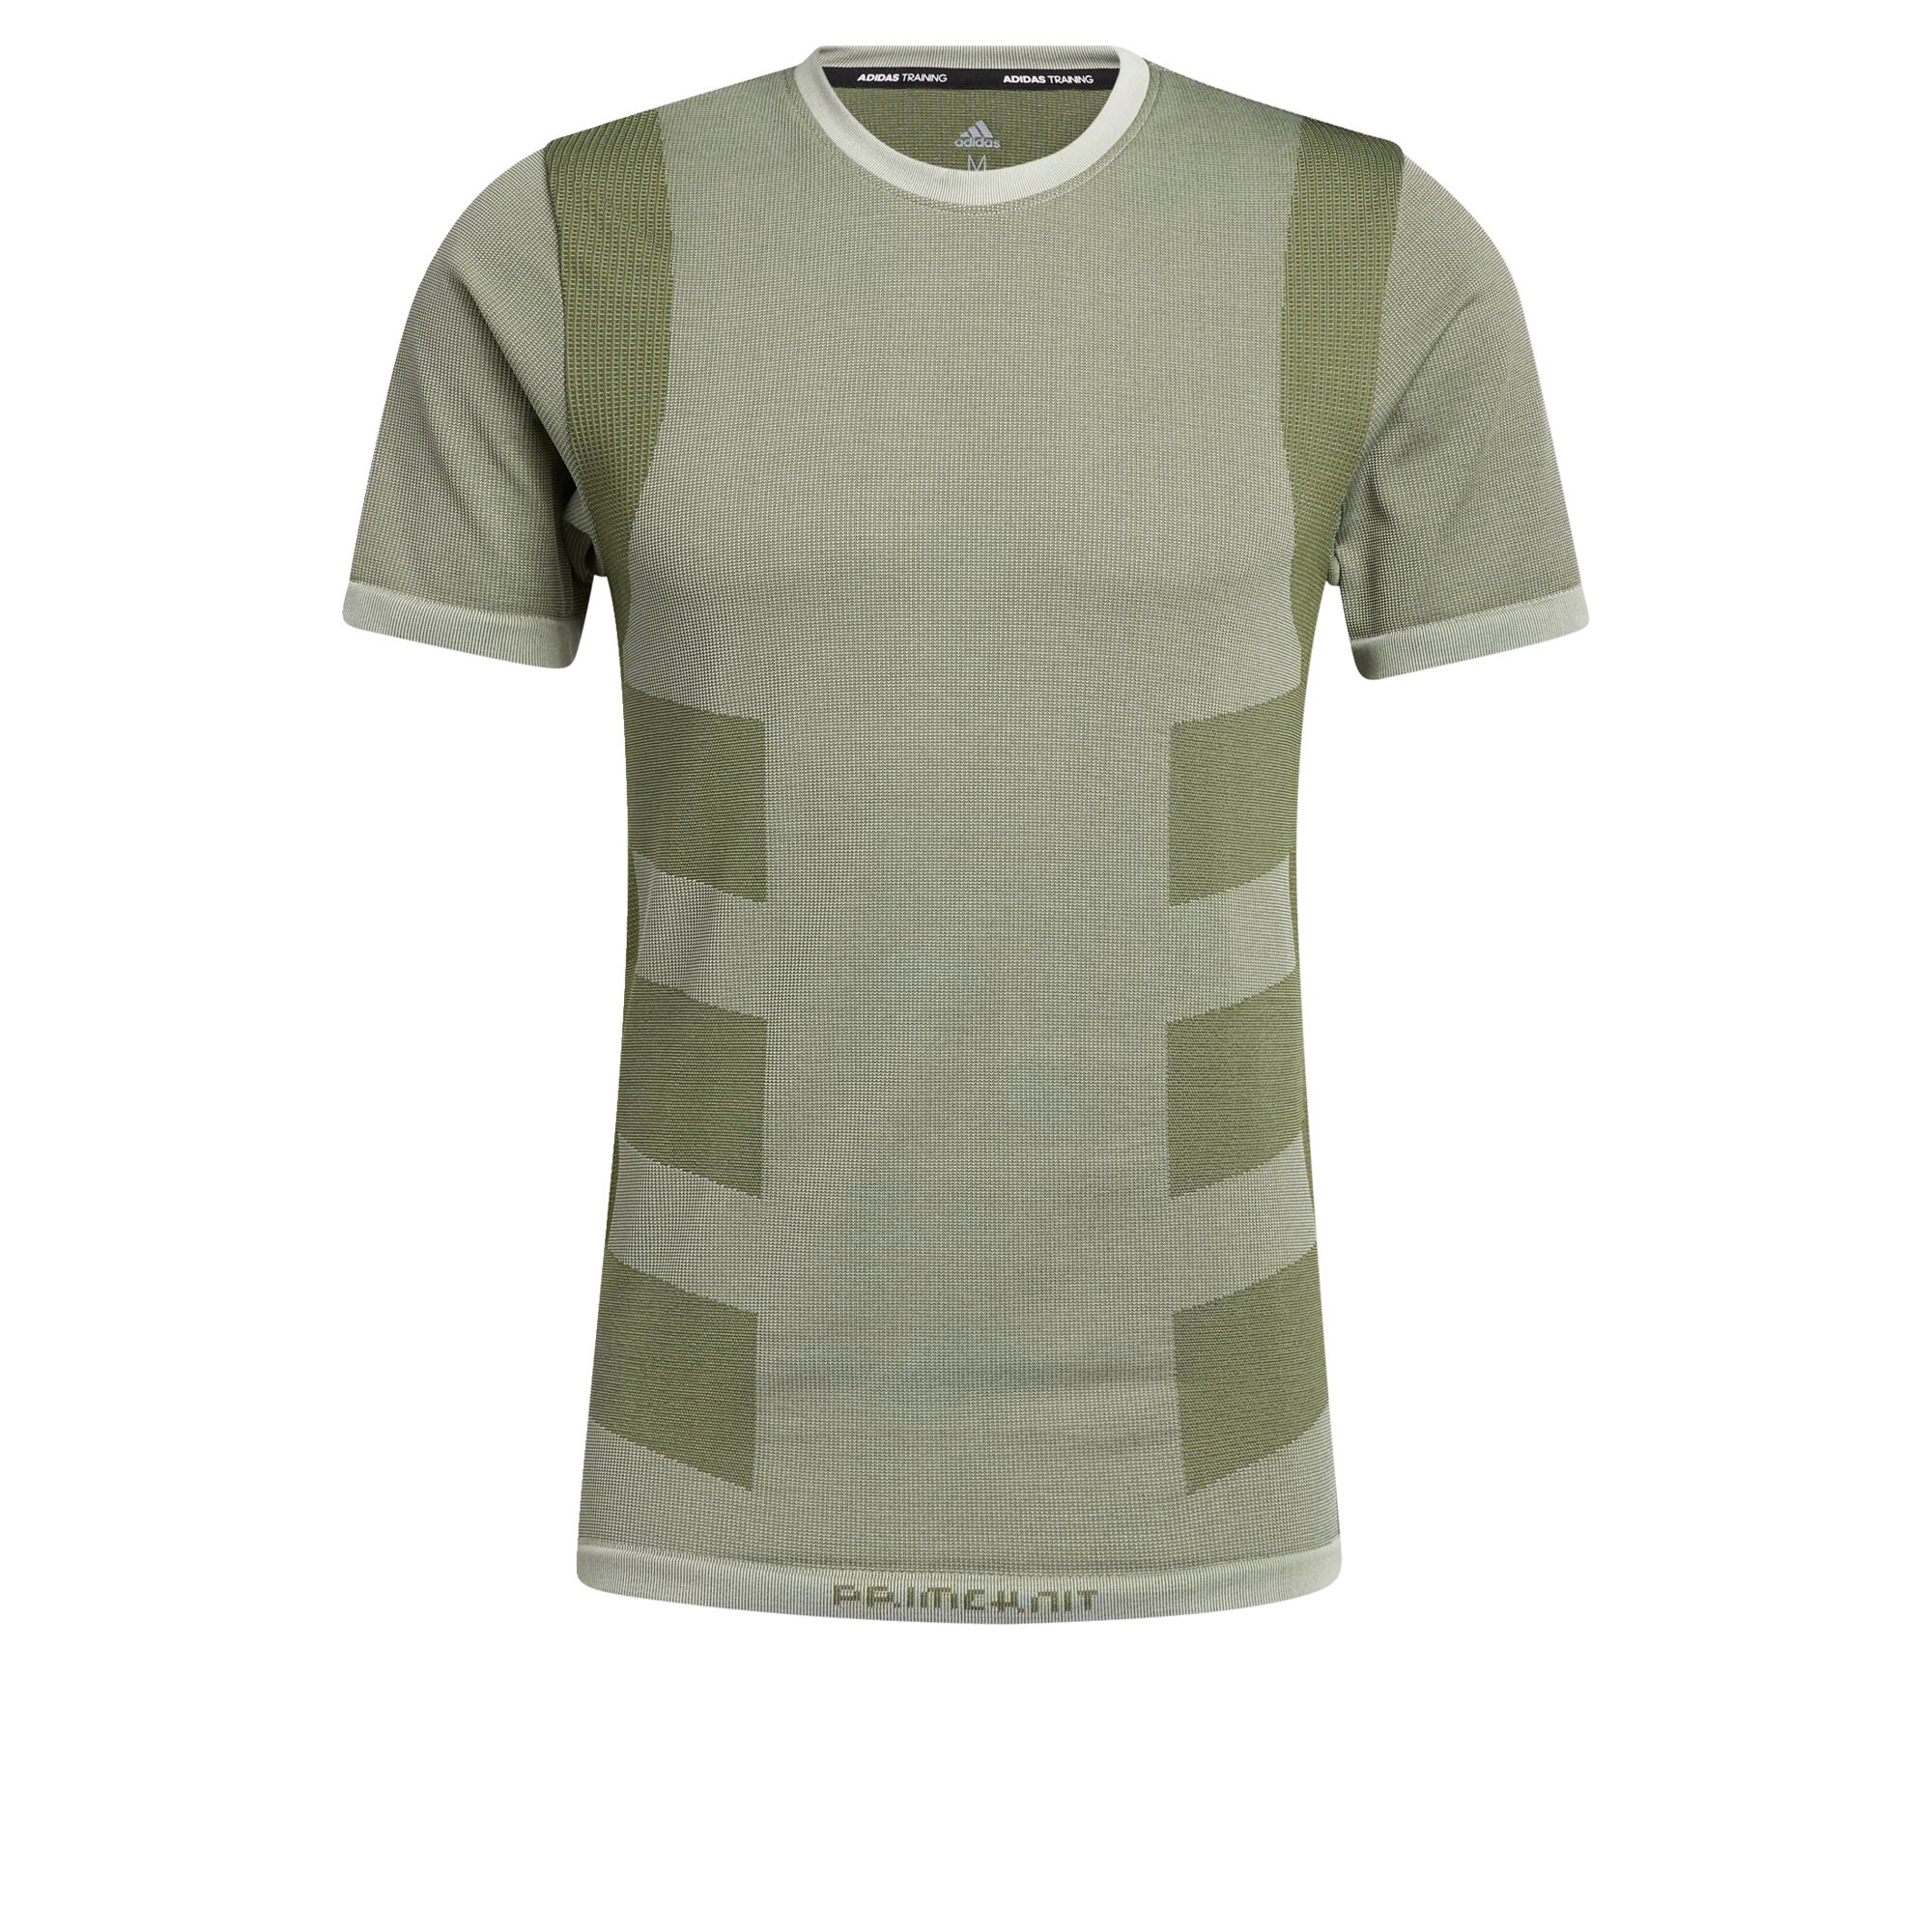 ADIDAS PERFORMANCE Sportiniai marškinėliai  rusvai žalia / pastelinė žalia